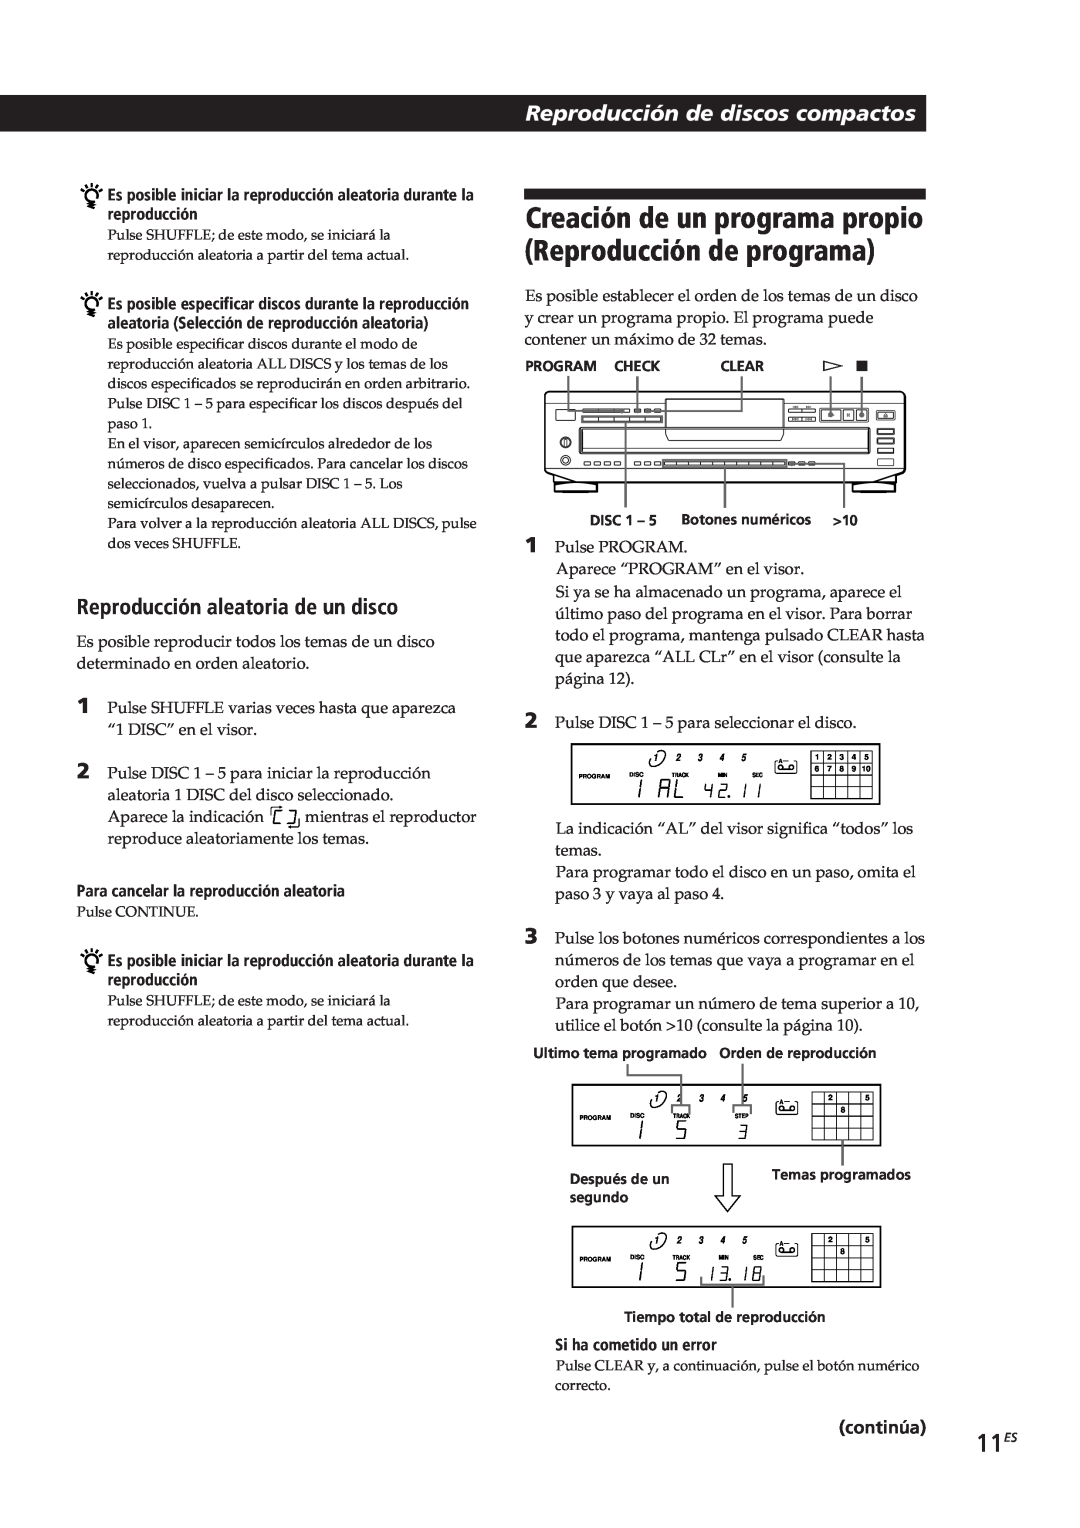 Sony CDP-CE305 manual 11ES, Reproducción aleatoria de un disco, Reproducción de discos compactos, Si ha cometido un error 